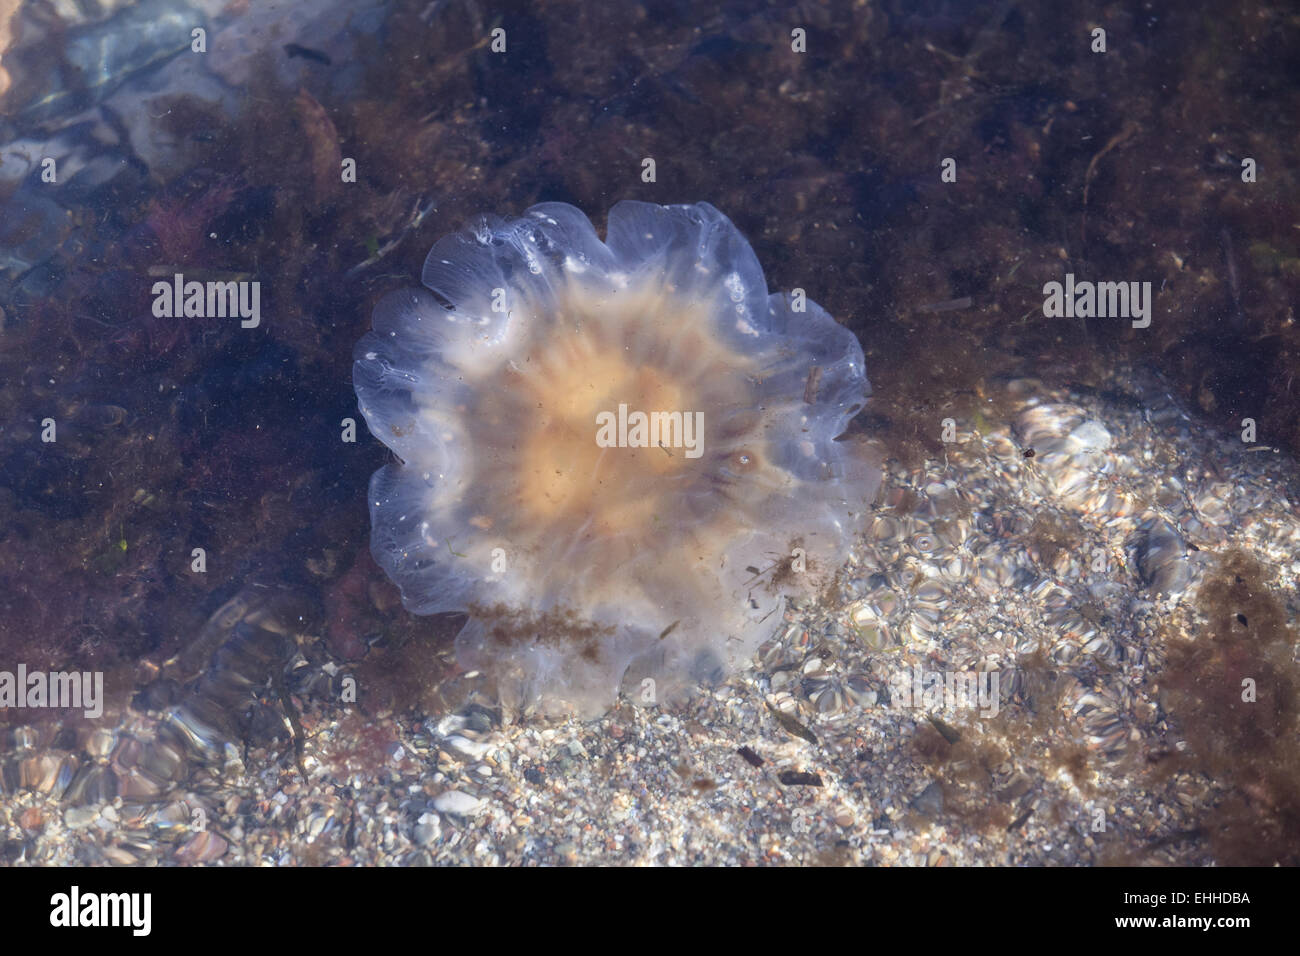 Yellow mane jellyfish (Cyanea capillata) Stock Photo